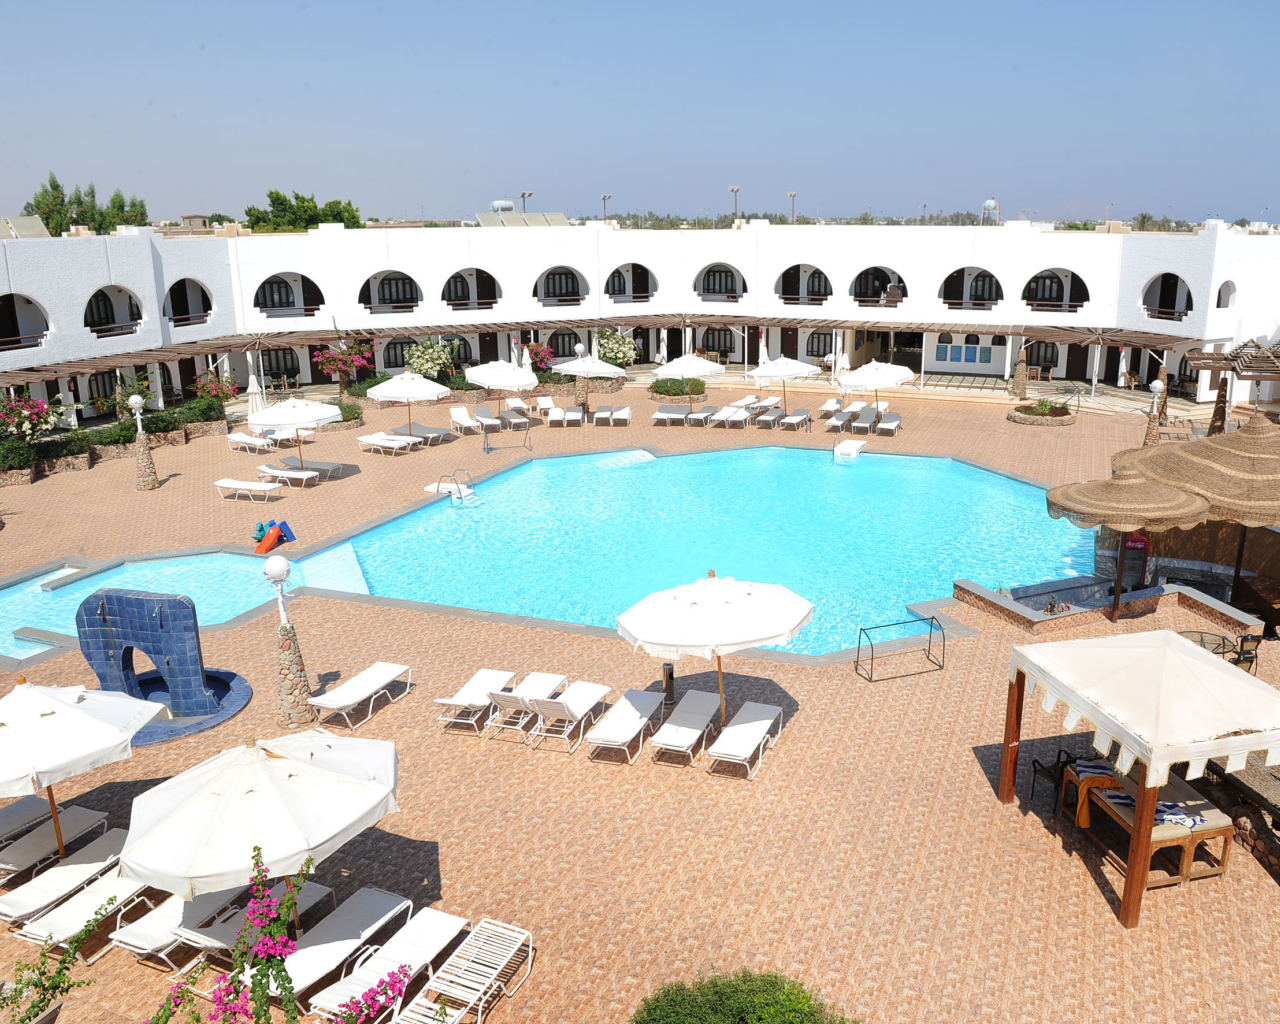 Бассейн в отеле на курорте Шарм эль Шейх, Египет